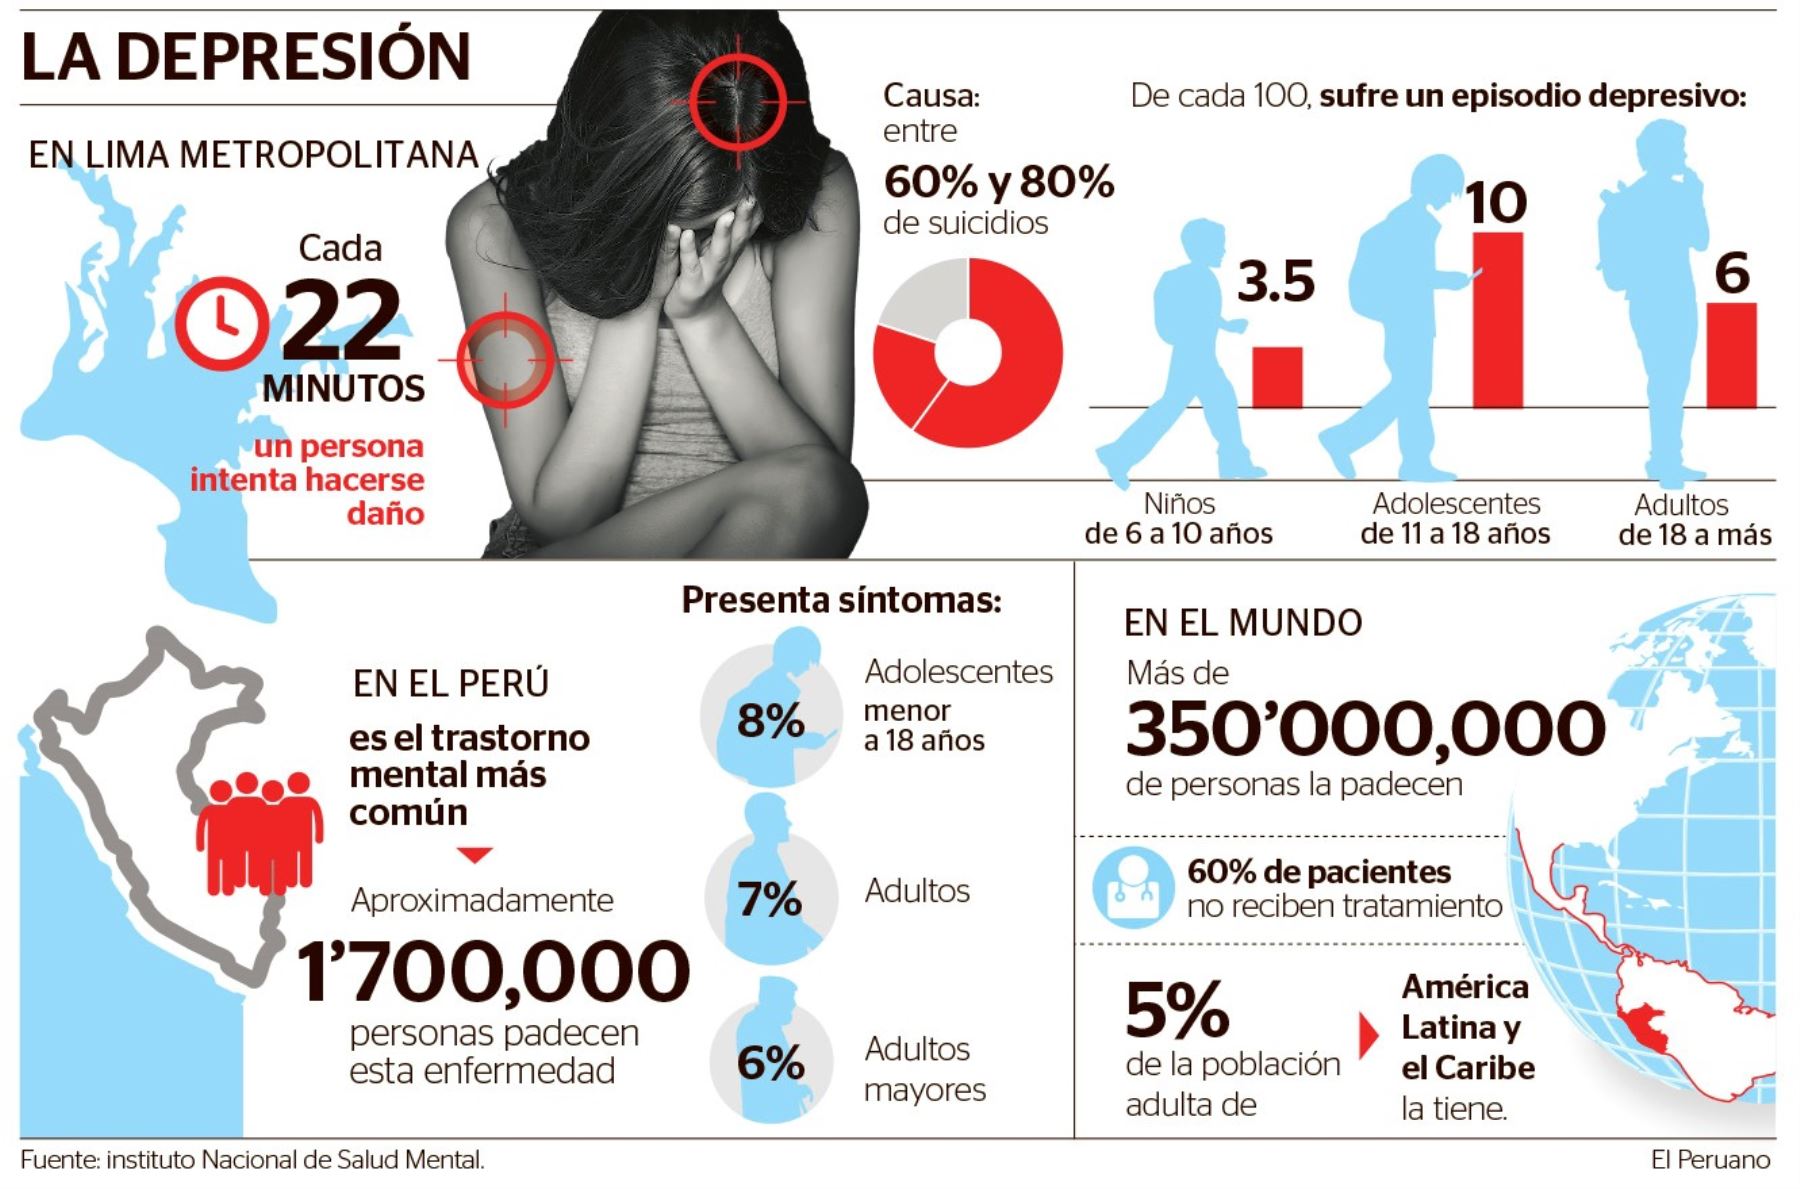 La depresión es el trastorno mental más común en Perú. Foto: ANDINA.